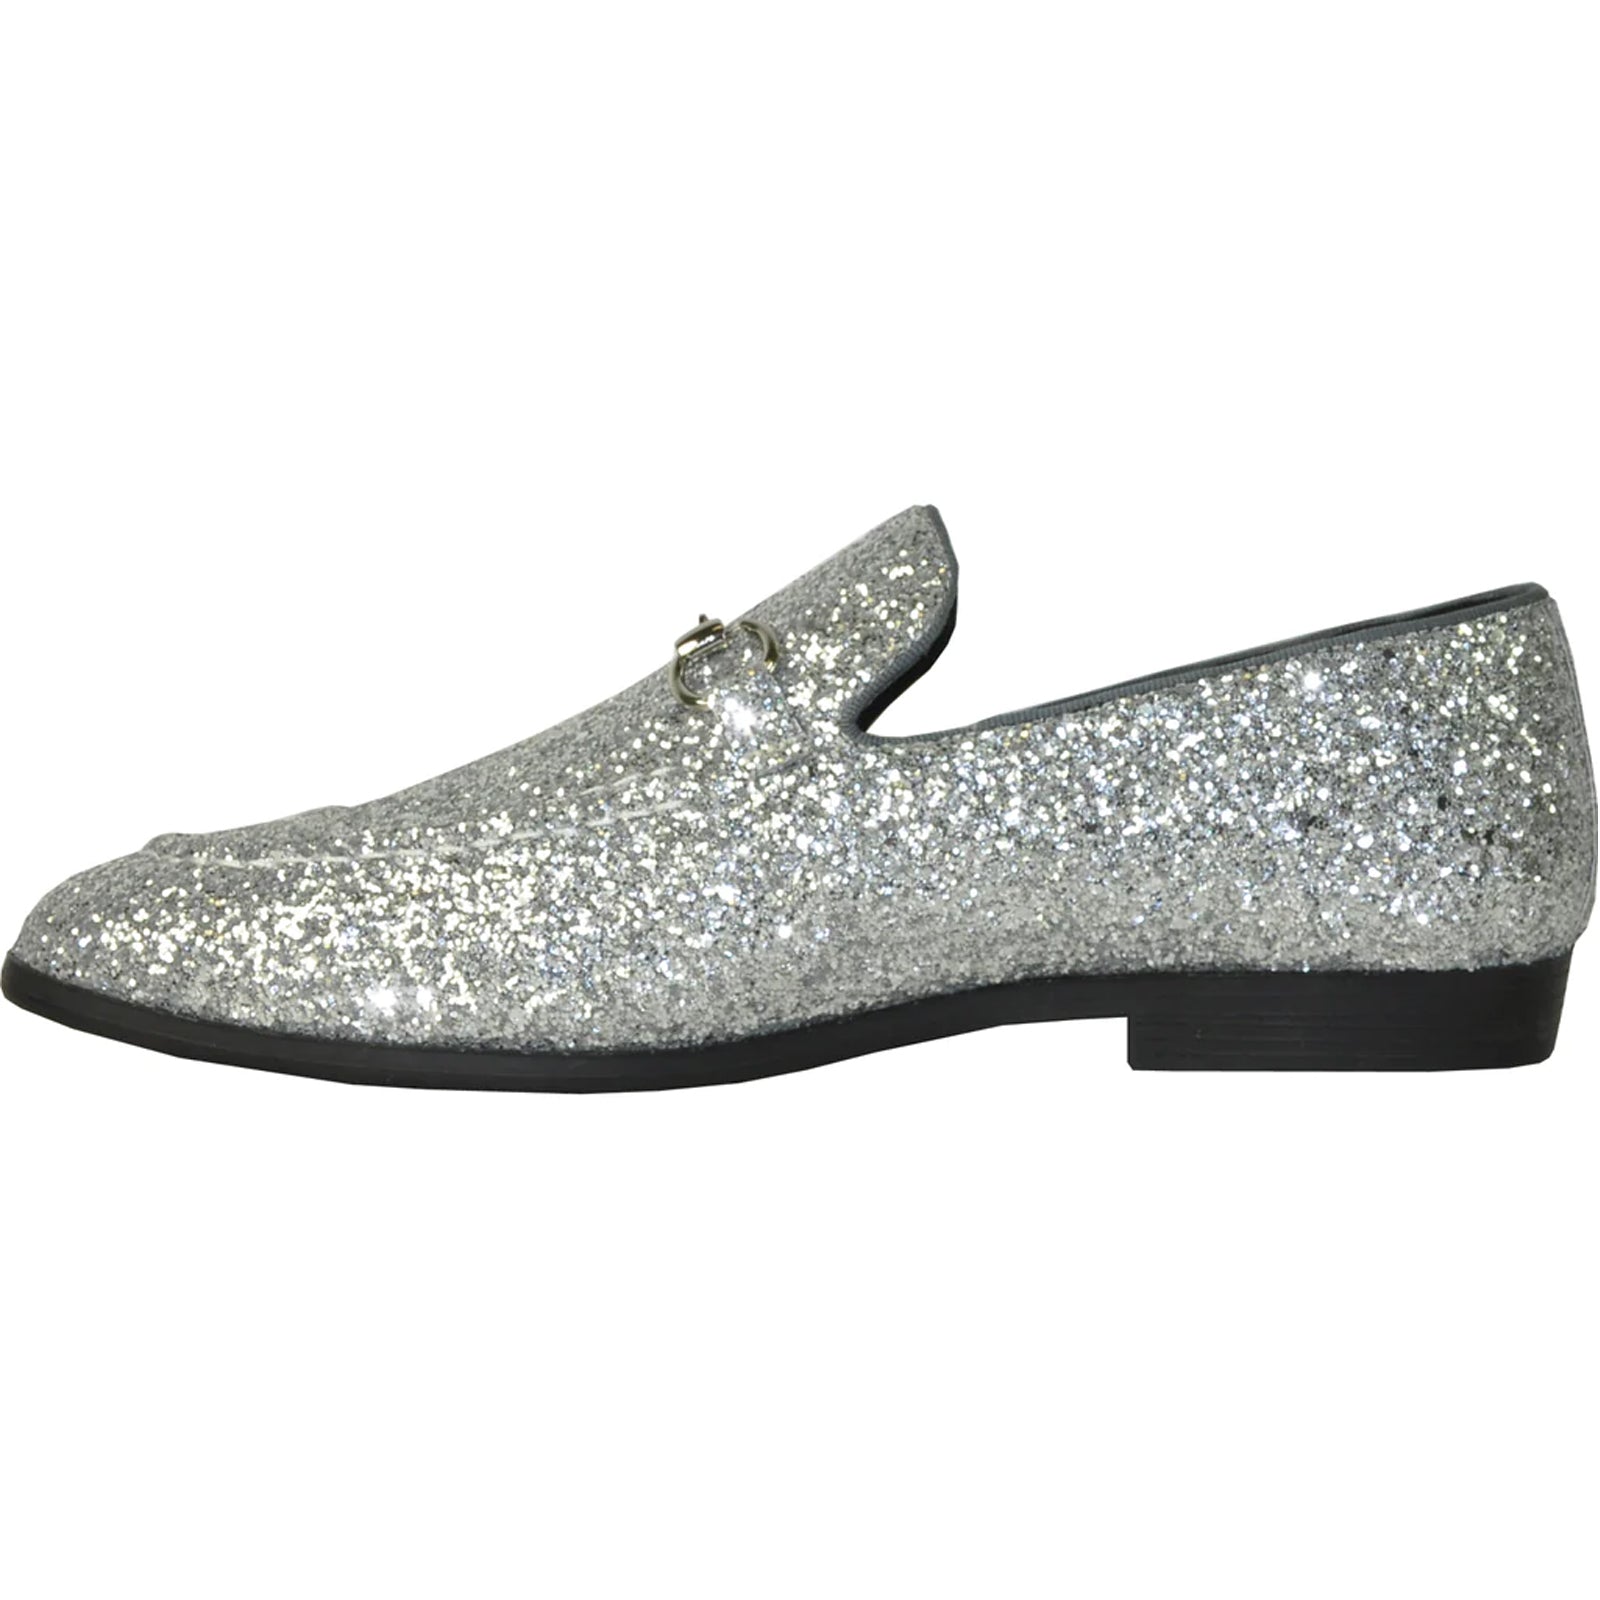 "Silver Grey Sequin Loafer - Modern Men's Prom Tuxedo Footwear"